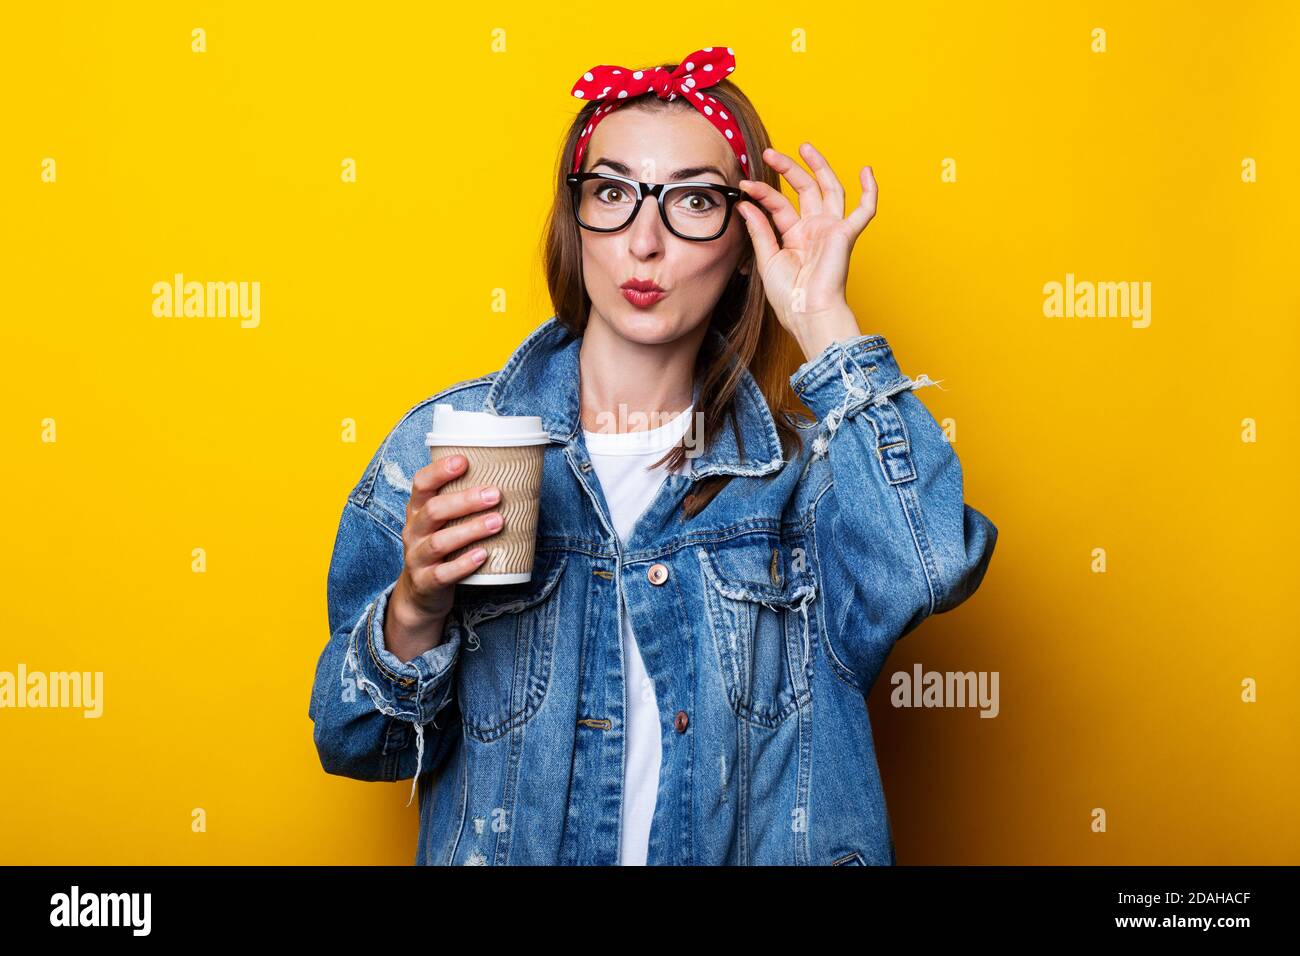 Jeune femme en veste denim, serre-tête et lunettes tenant une tasse en papier dans les mains sur fond jaune Banque D'Images